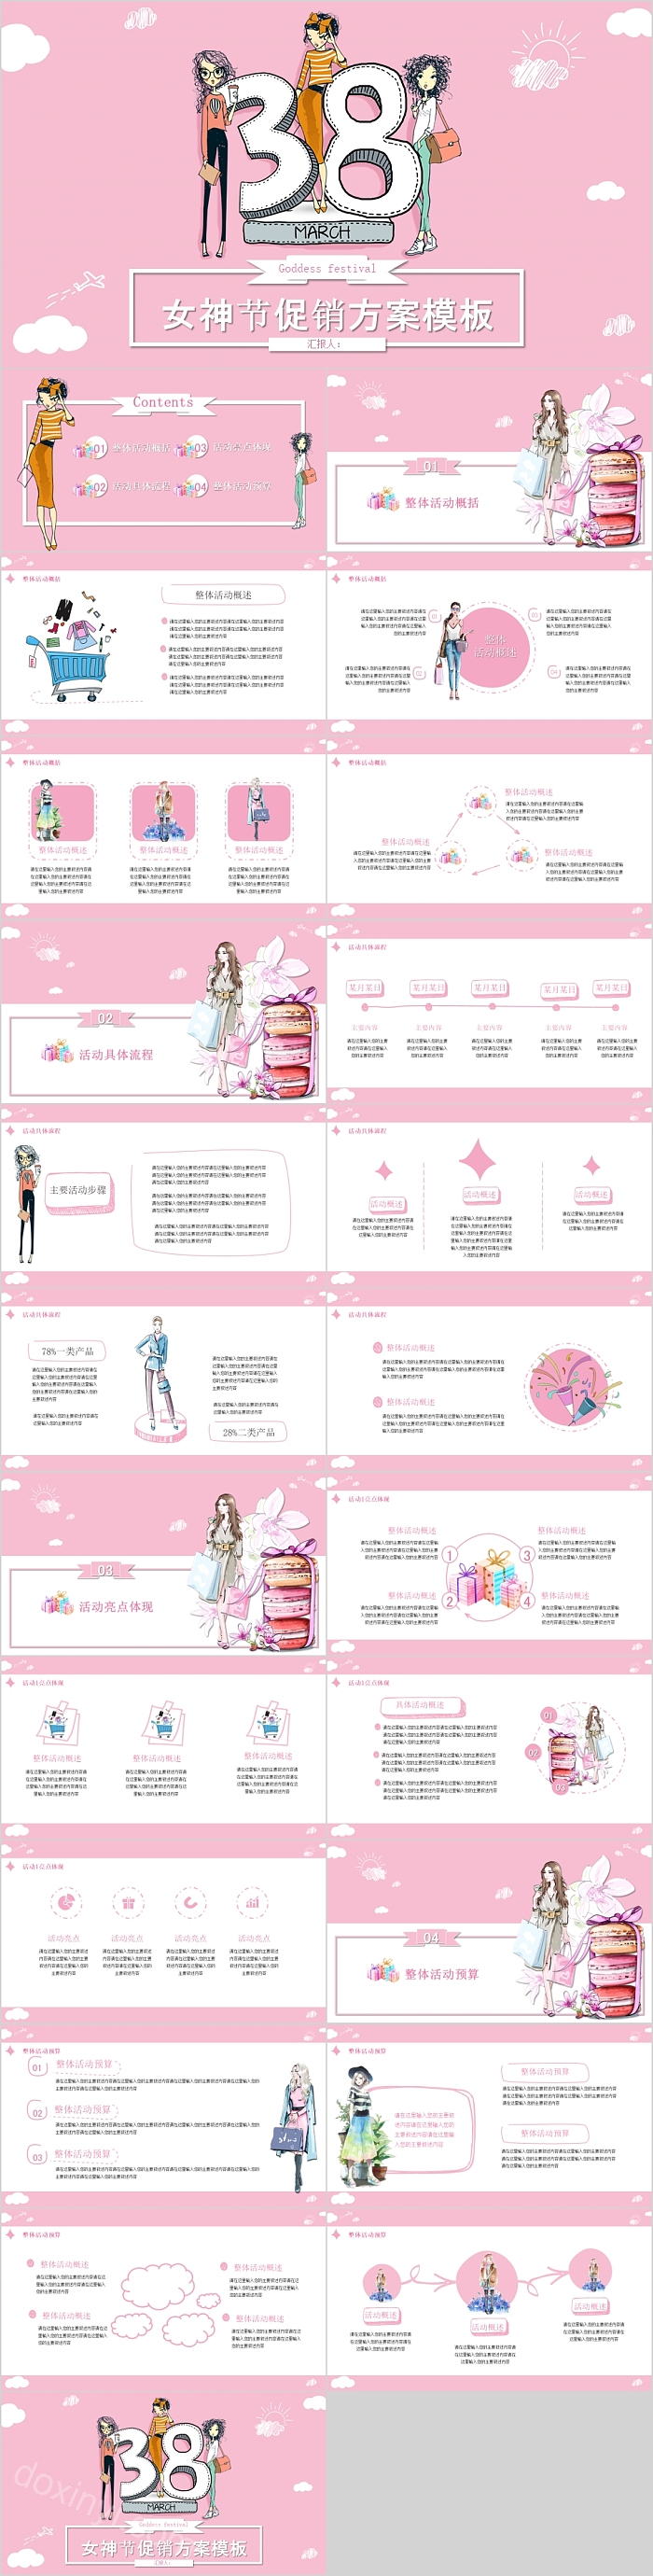 粉色时尚女神节活动策划通用模板